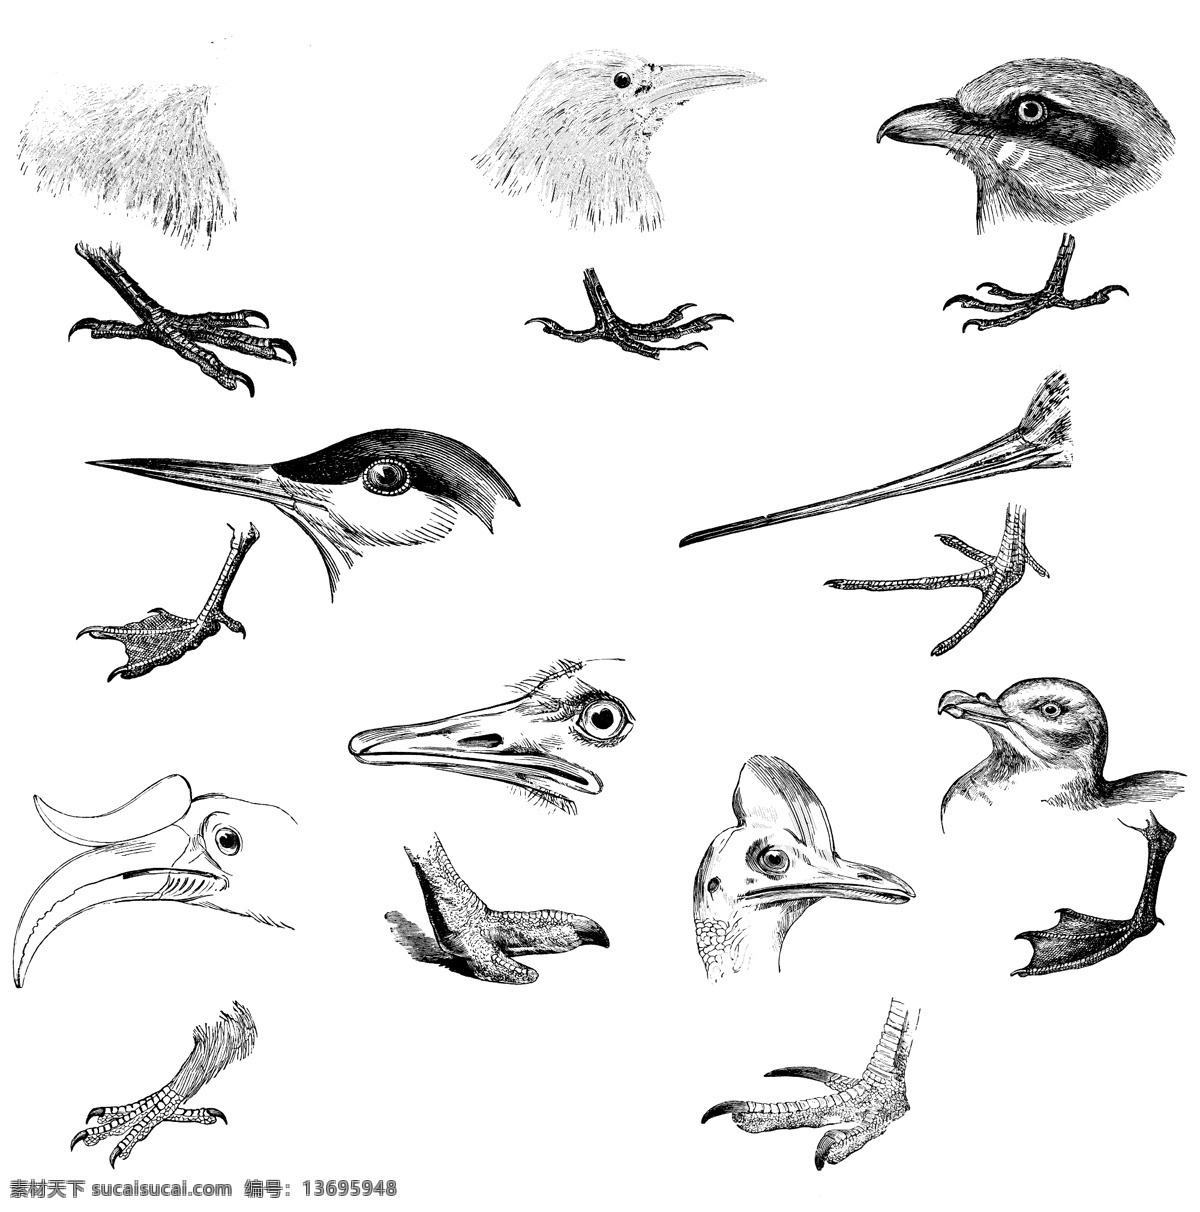 鸟类 欧美 古典 线条 矢量 动物 库 欧洲古典素材 矢量素材 素描素材 线条素材 非 主流 矢量图 其他矢量图